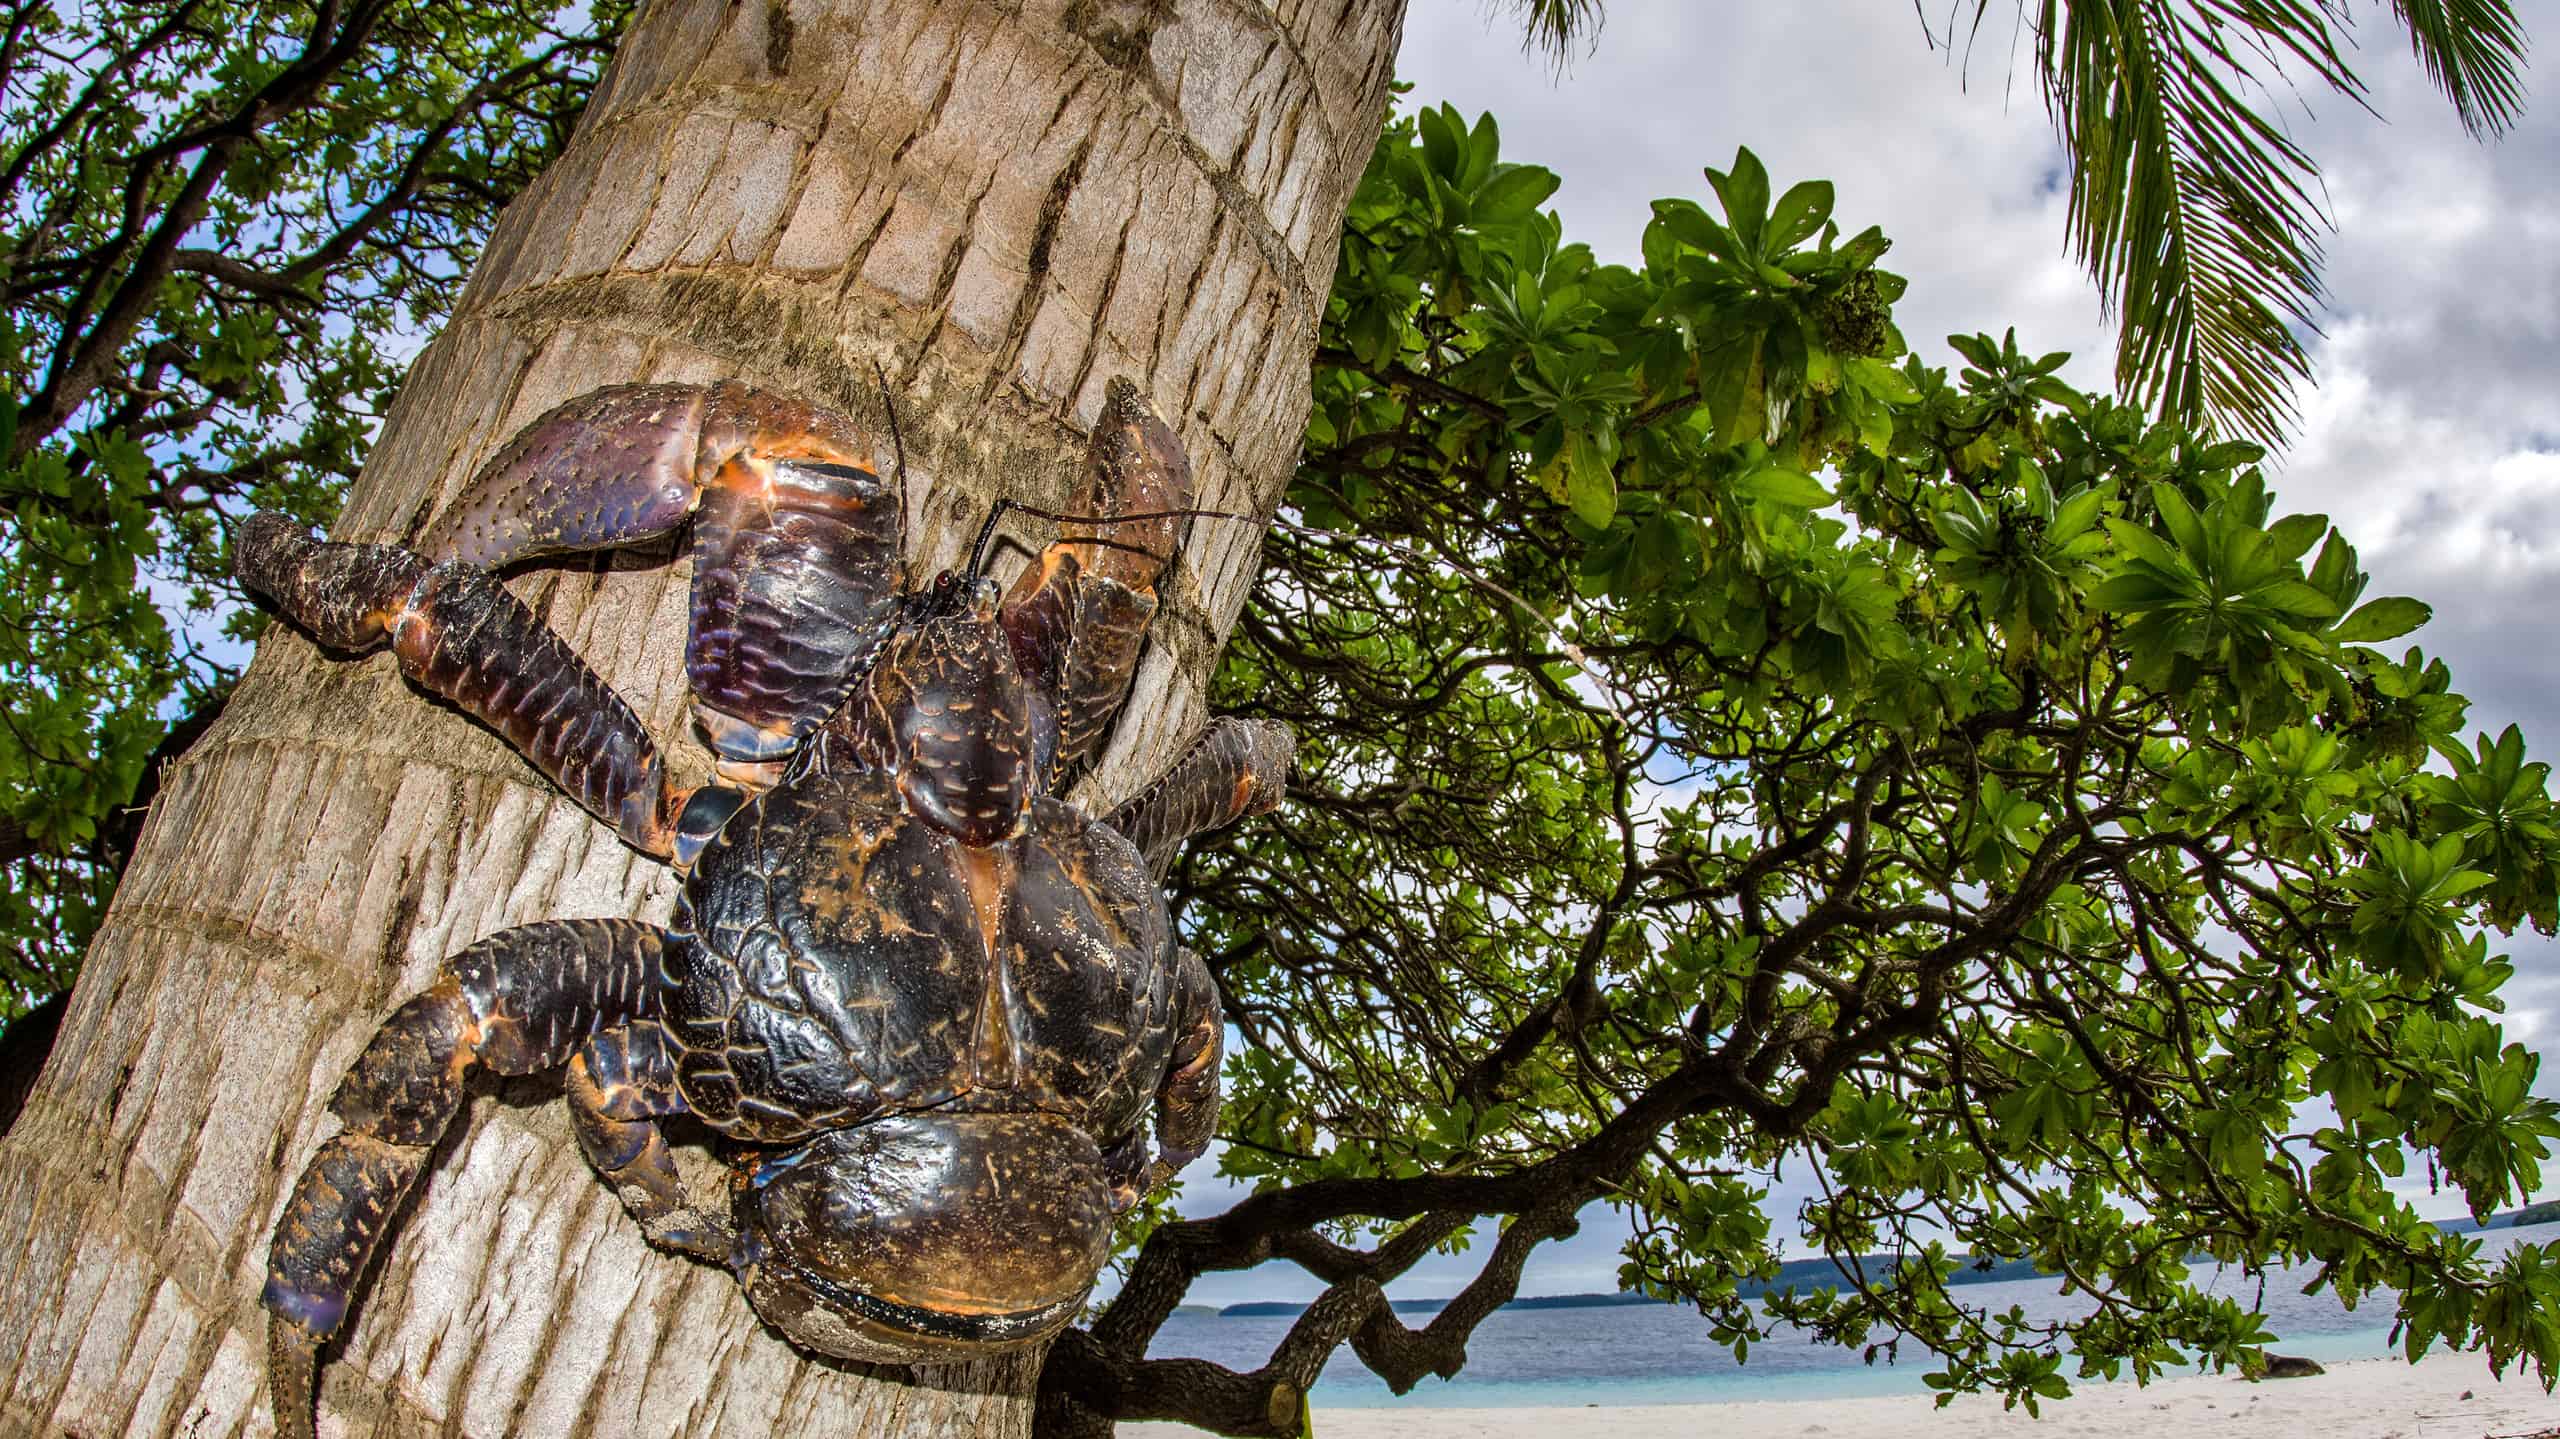 Coconut Crab on Eueiki Island in Tonga